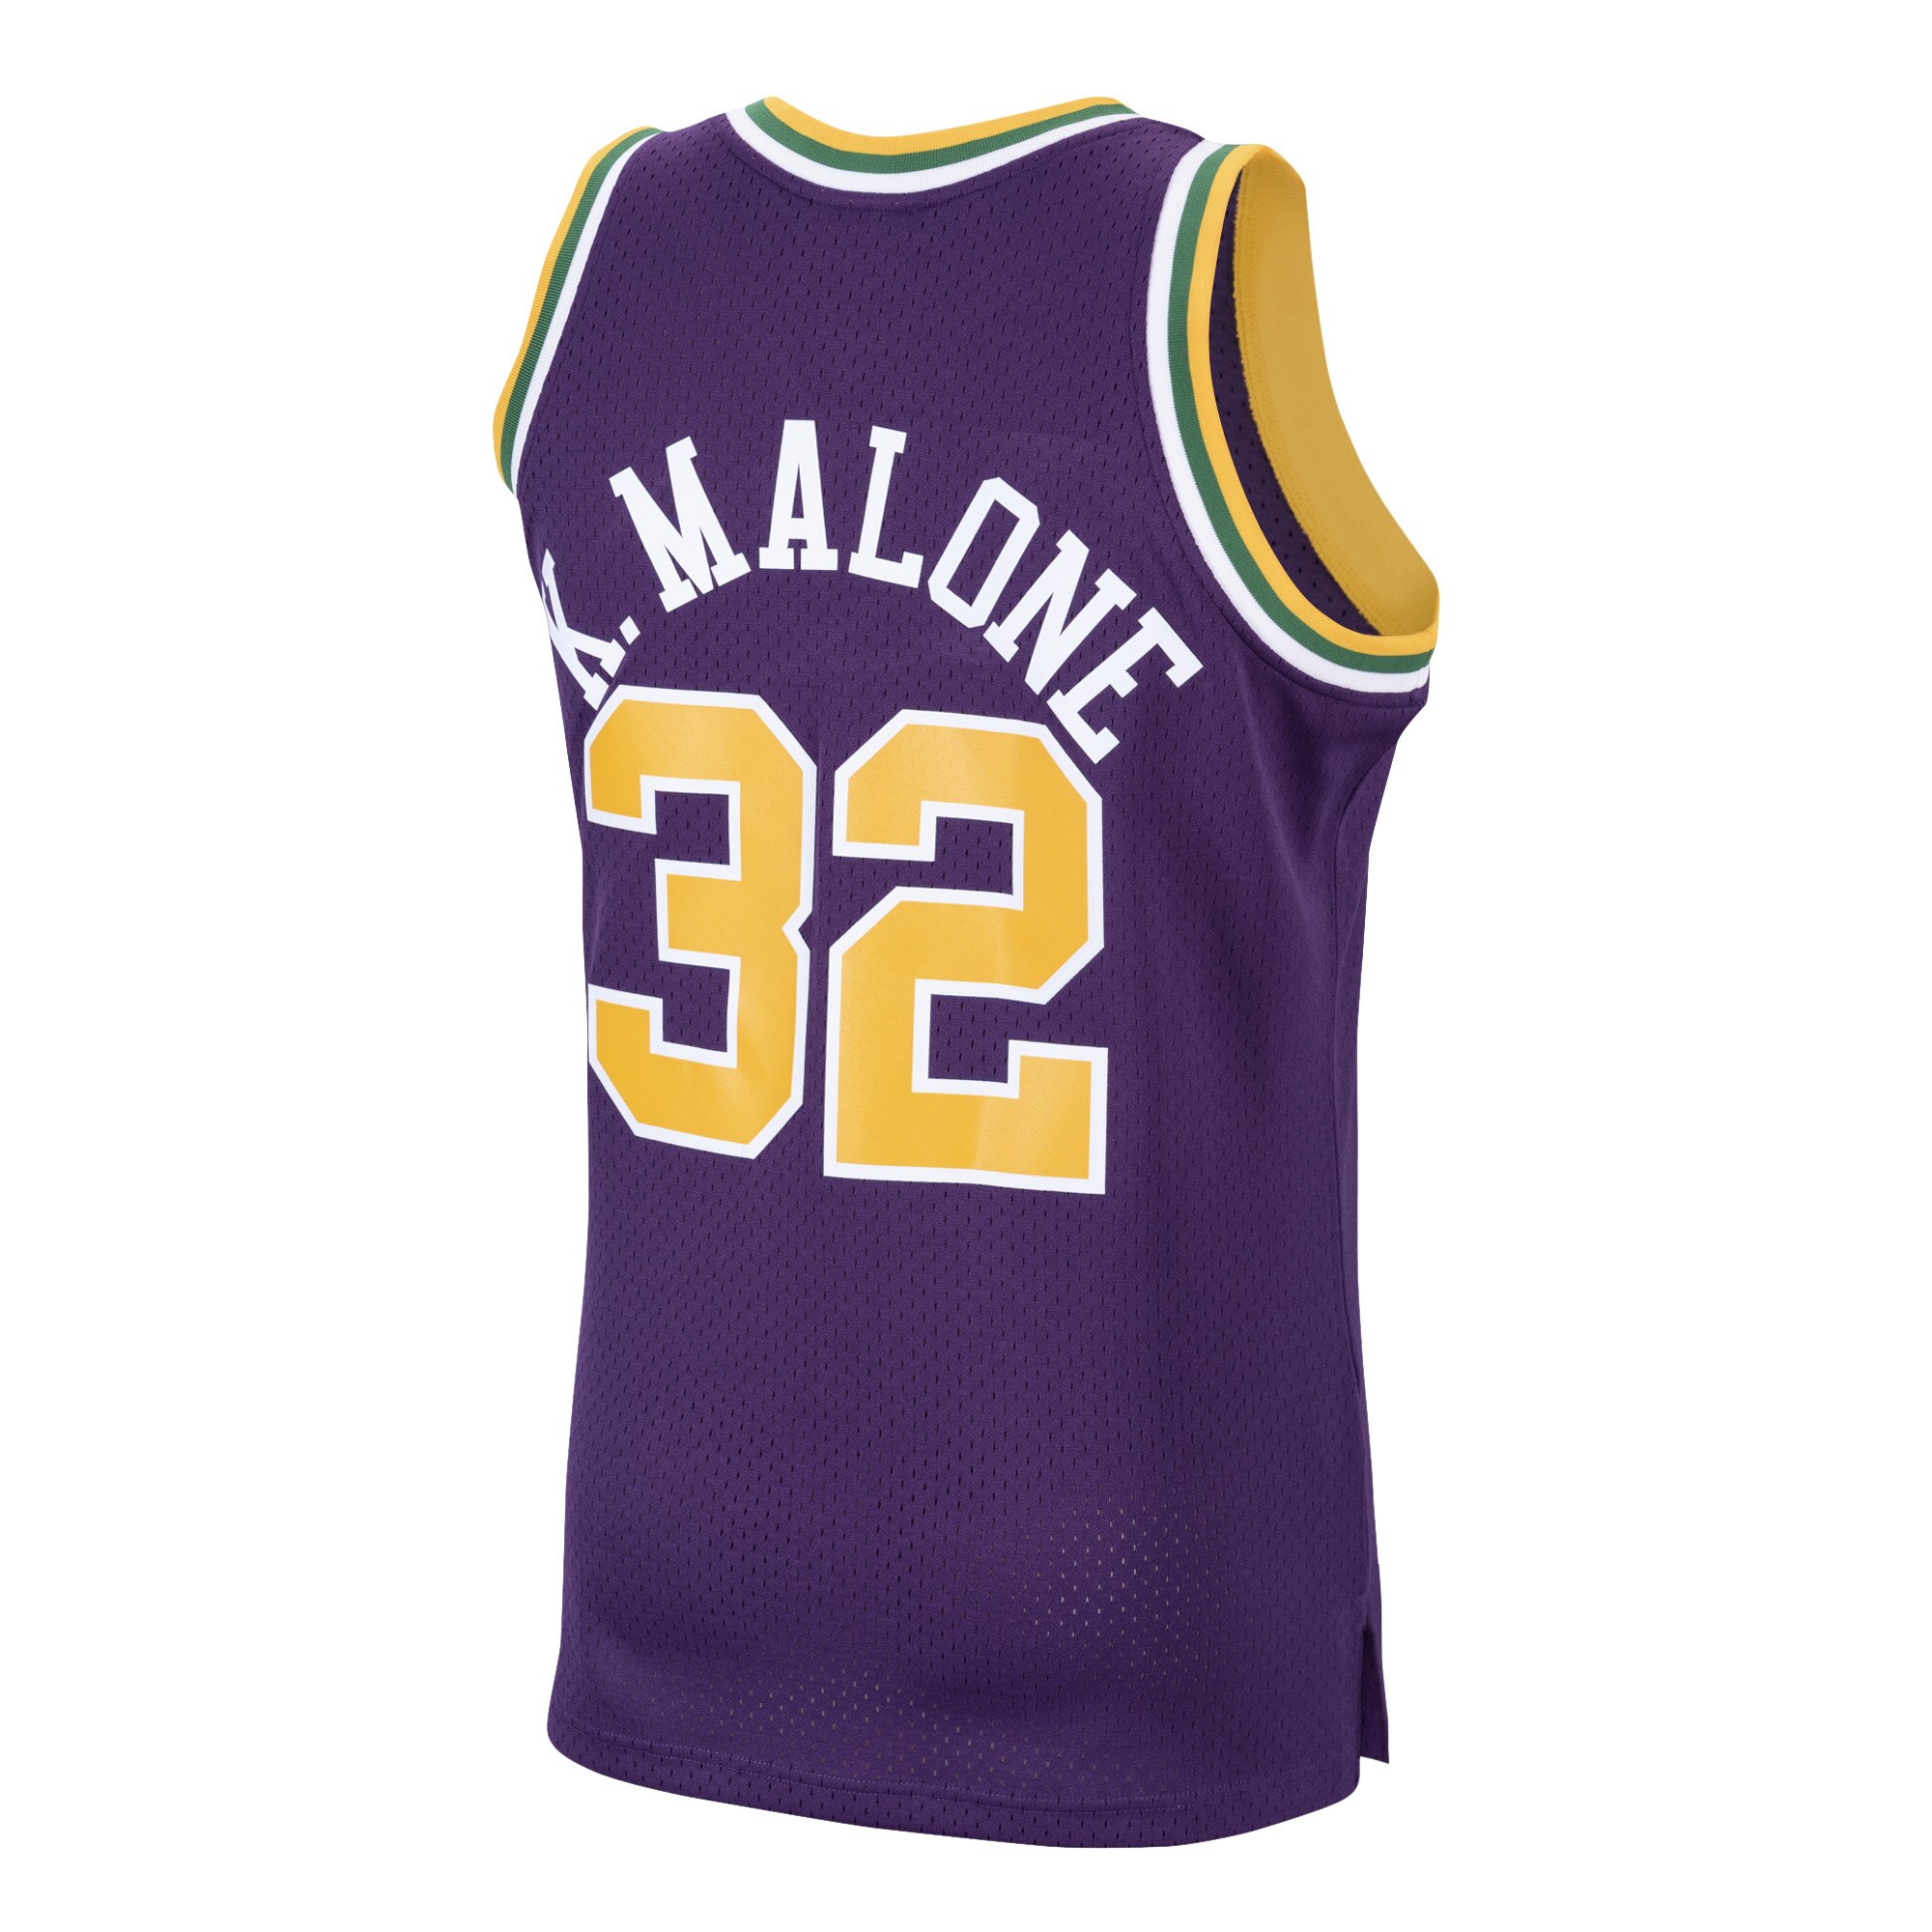 Adidas Karl Malone #32 Utah Jazz Hardwood Classic Basketball Jersey Nba M  5755